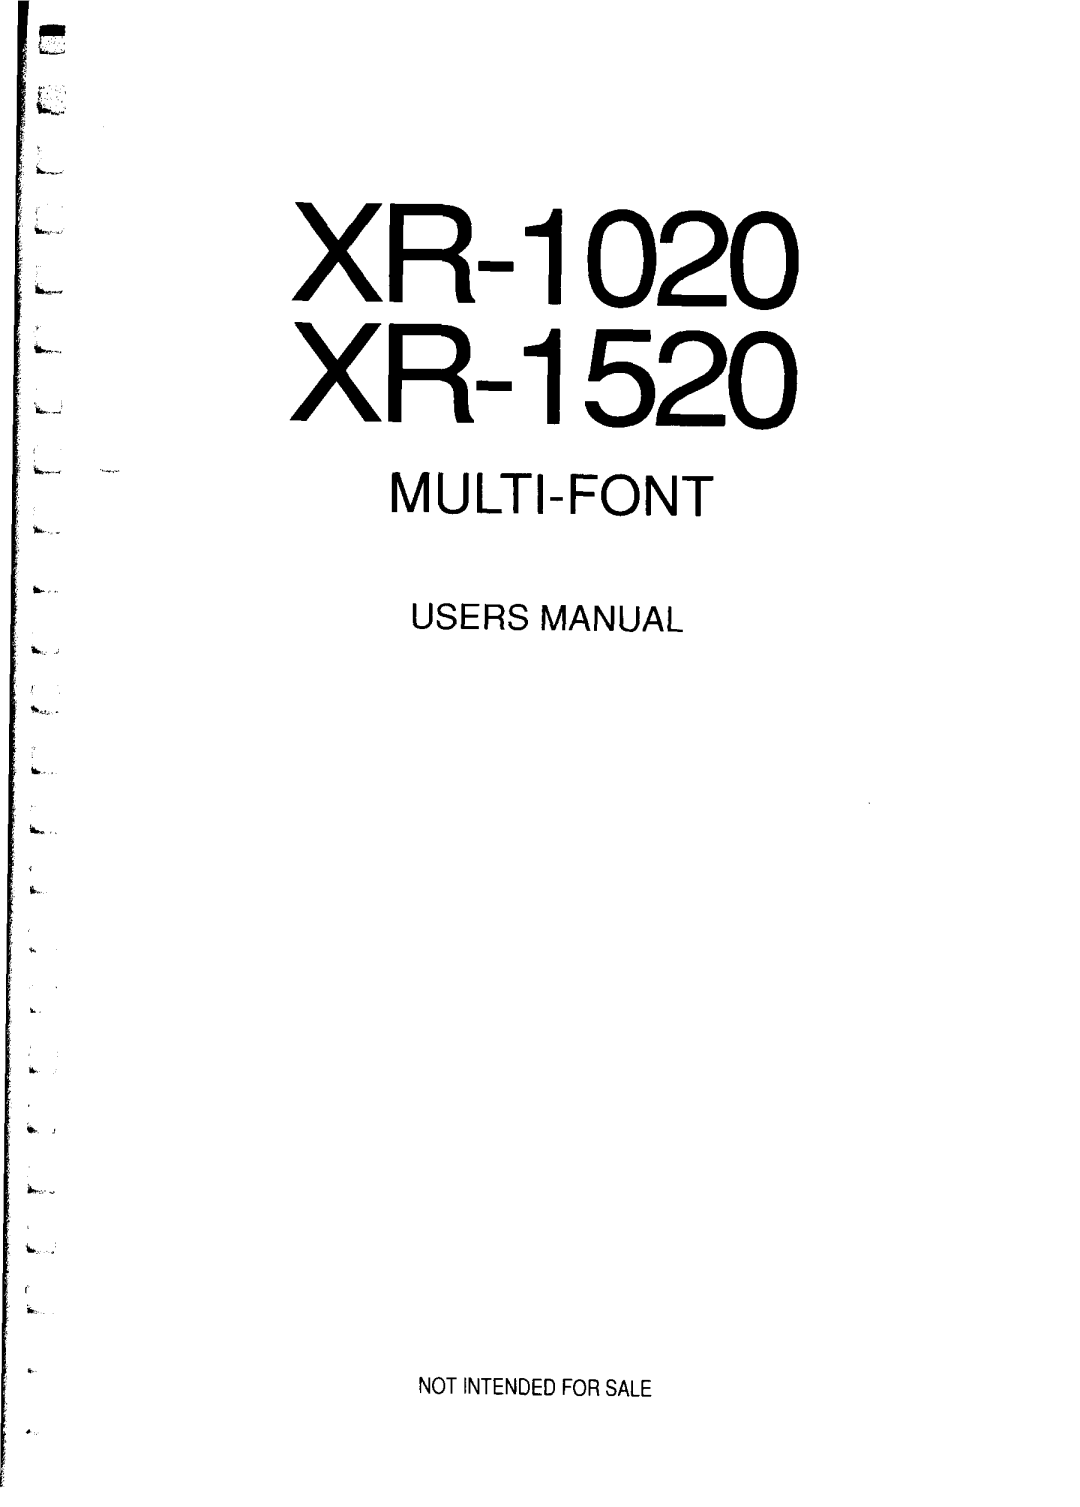 Star Micronics manual XR-1020 XR-1520, Multi-Font, Users Manual, L i L 